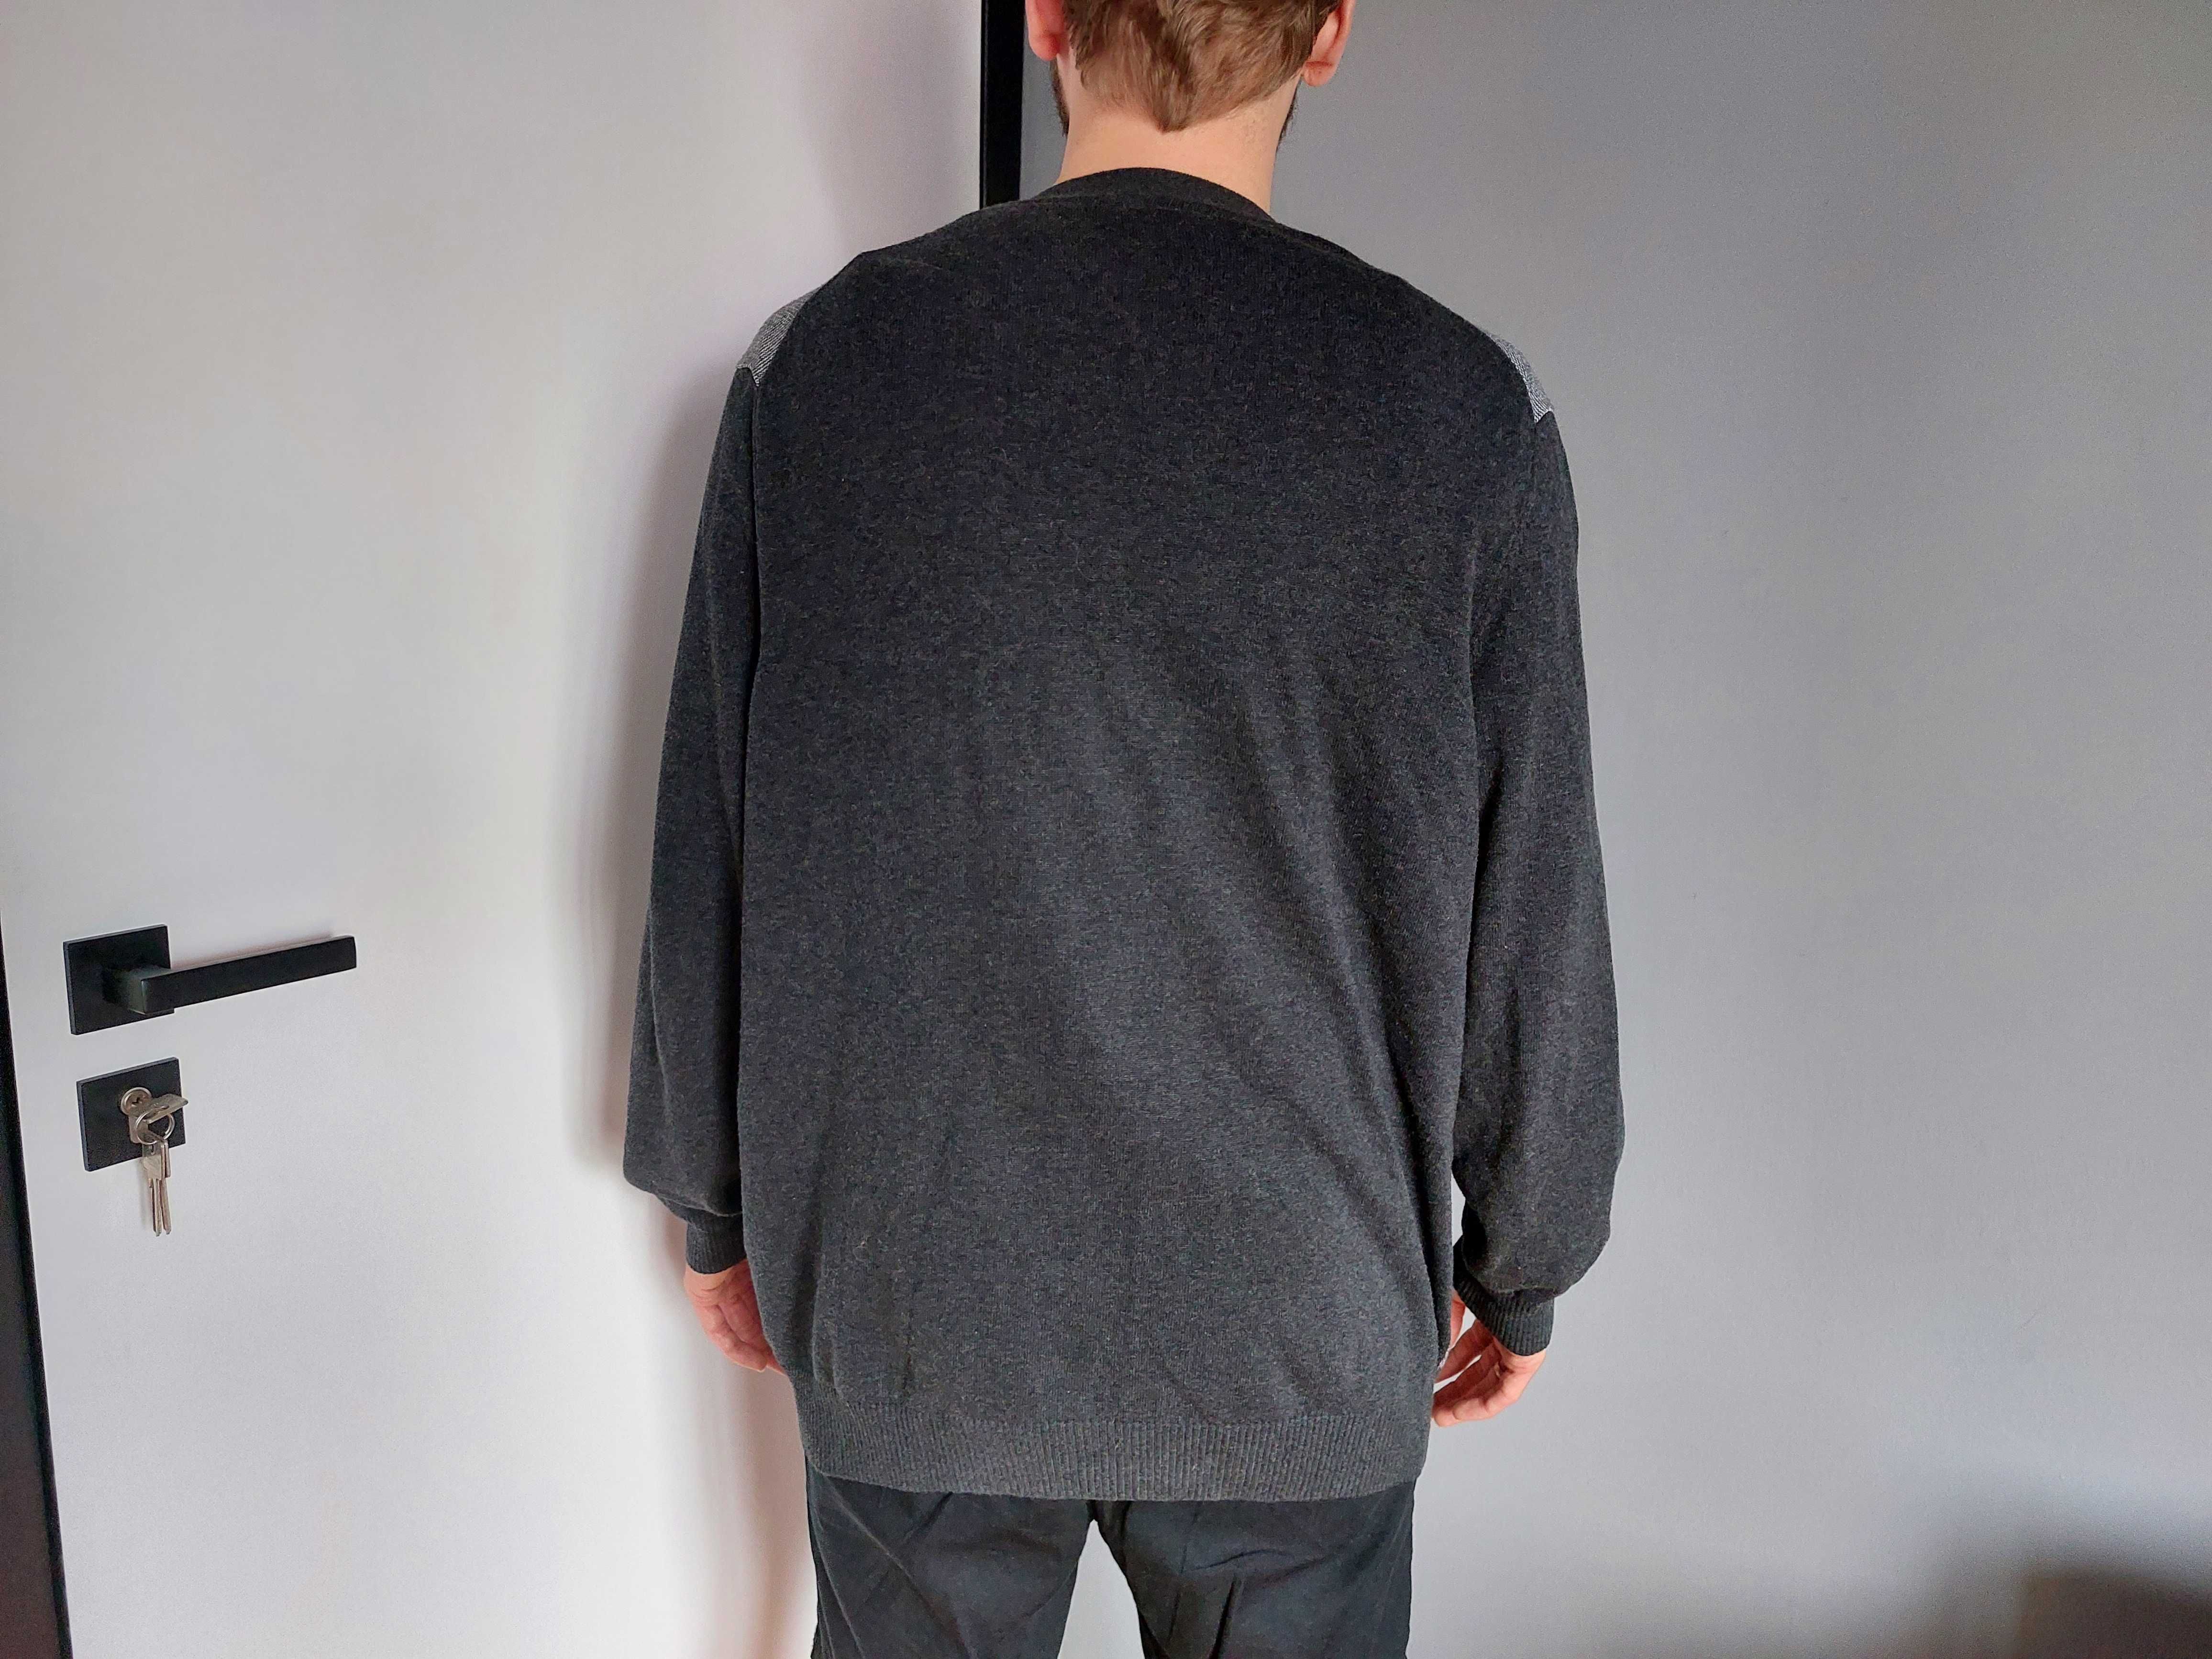 szary sweter męski rozpinany BonPrix, XL, kardigan